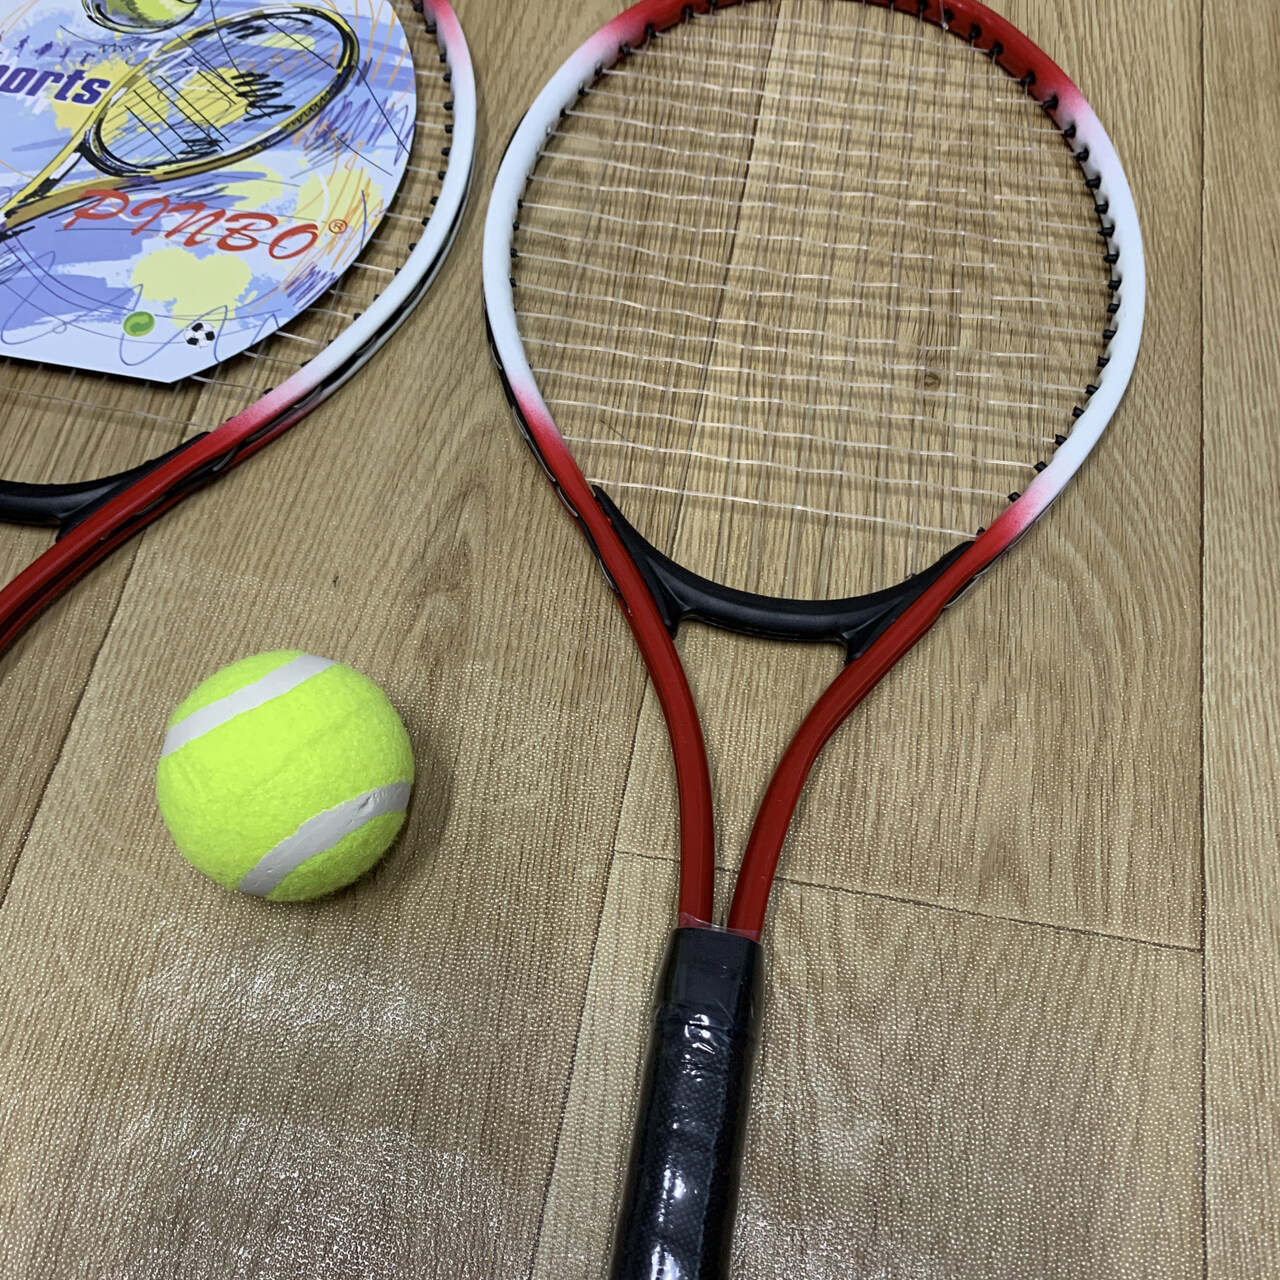 ข้อมูลประกอบของ ZXK - Tennis ไม้เทนนิส 2 ชิ้น พร้อมลูกเทนนิส 1 ลูก สำหรับเด็ก